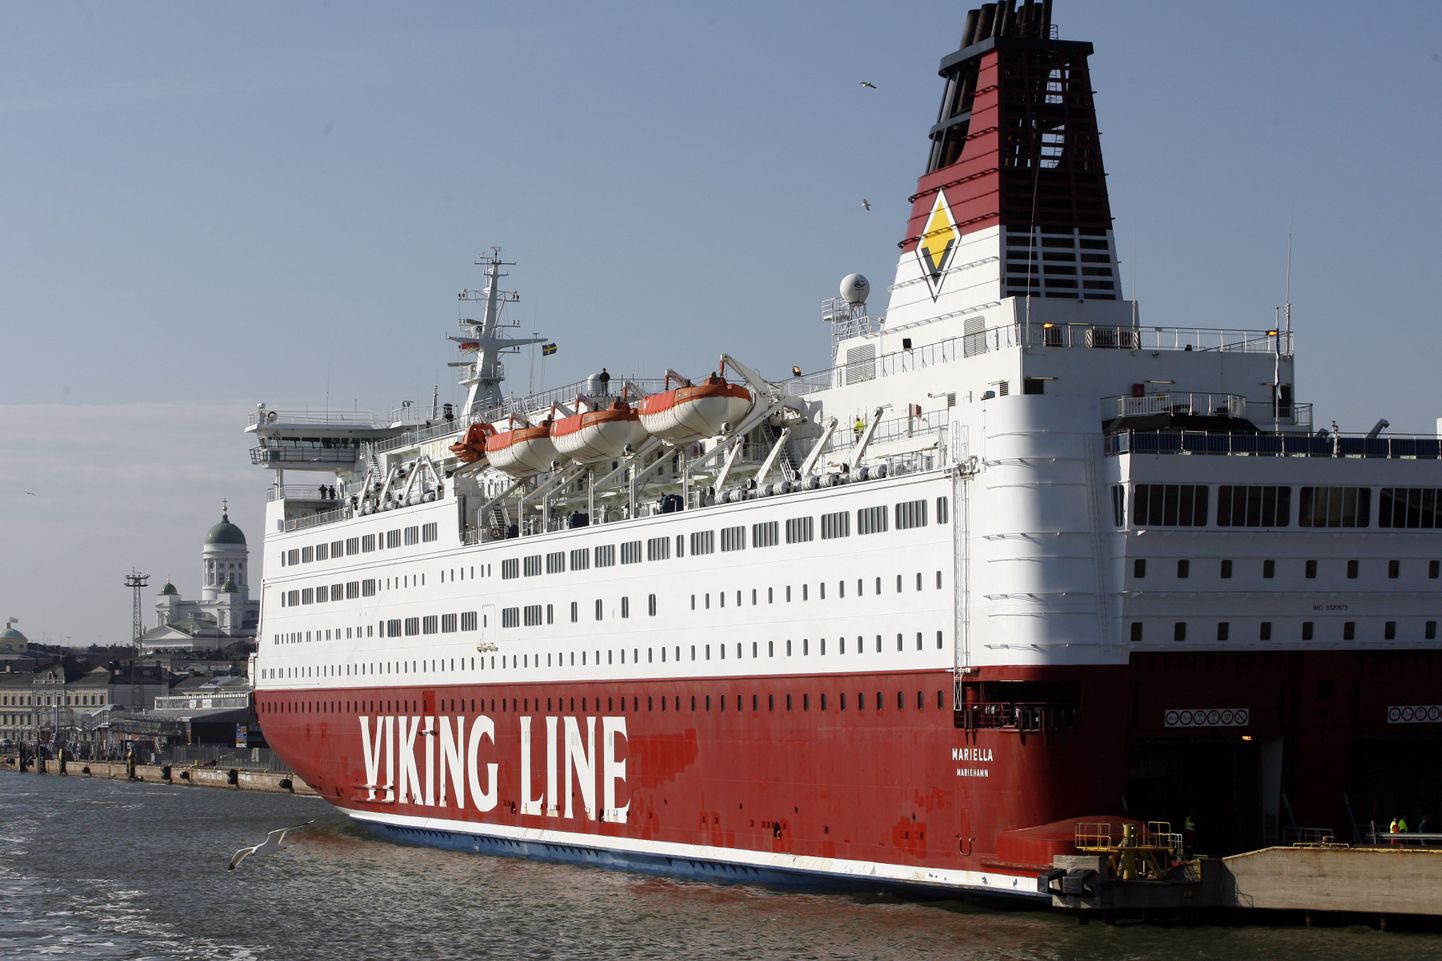 Viking Line'i Mariella